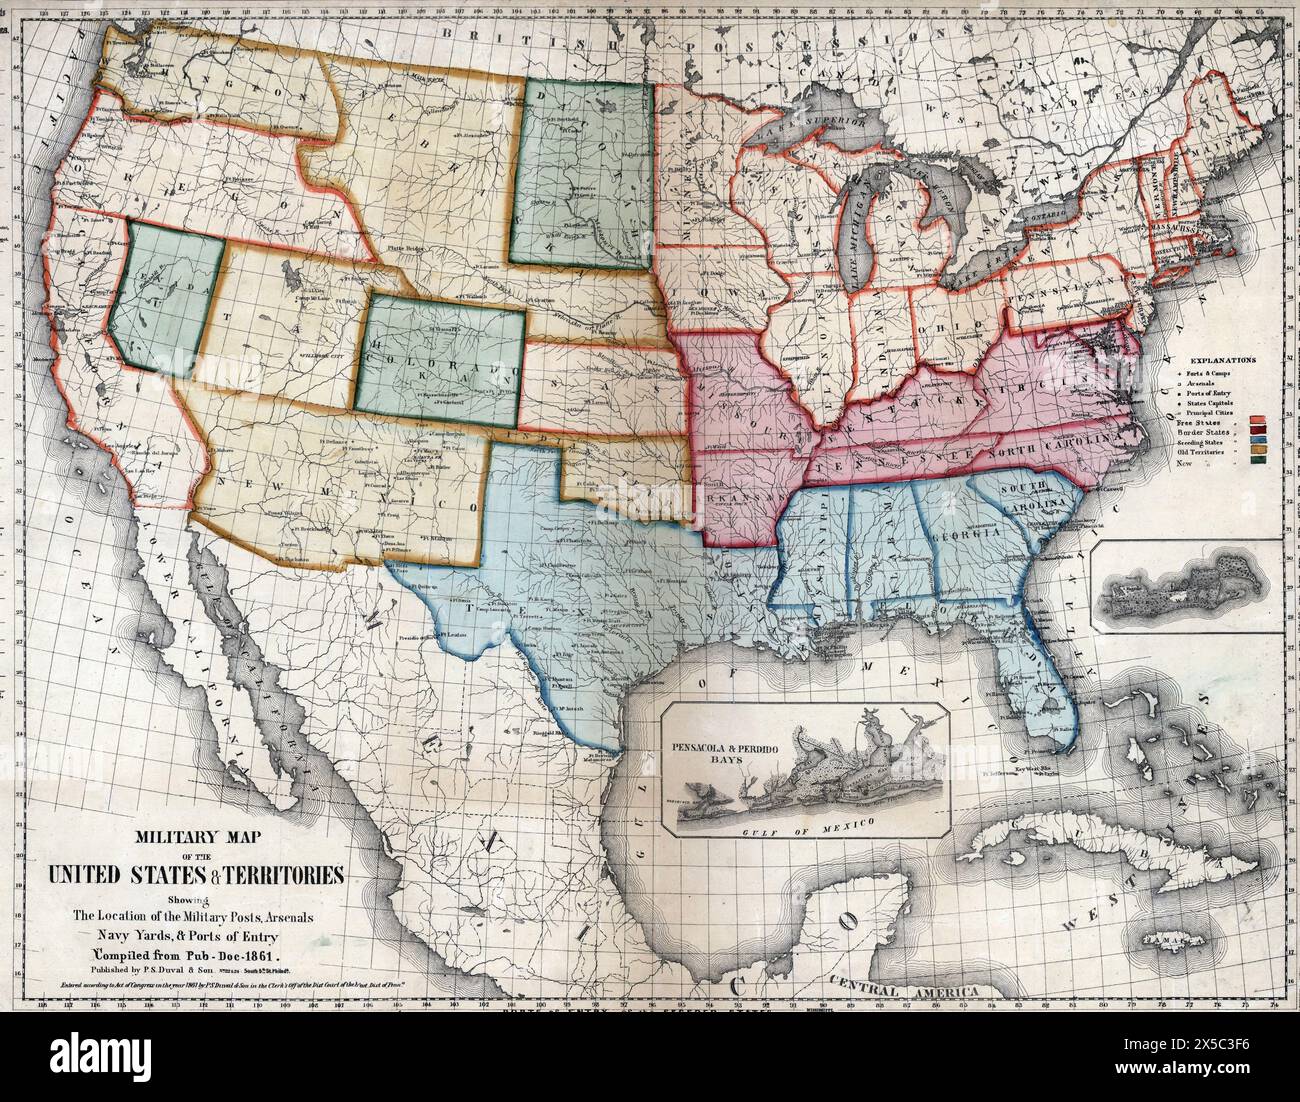 Militärkarte der Vereinigten Staaten und Territorien mit der Position der Militärposten, Arsenale, Navy Yards und Eingangshäfen, 1861 Stockfoto